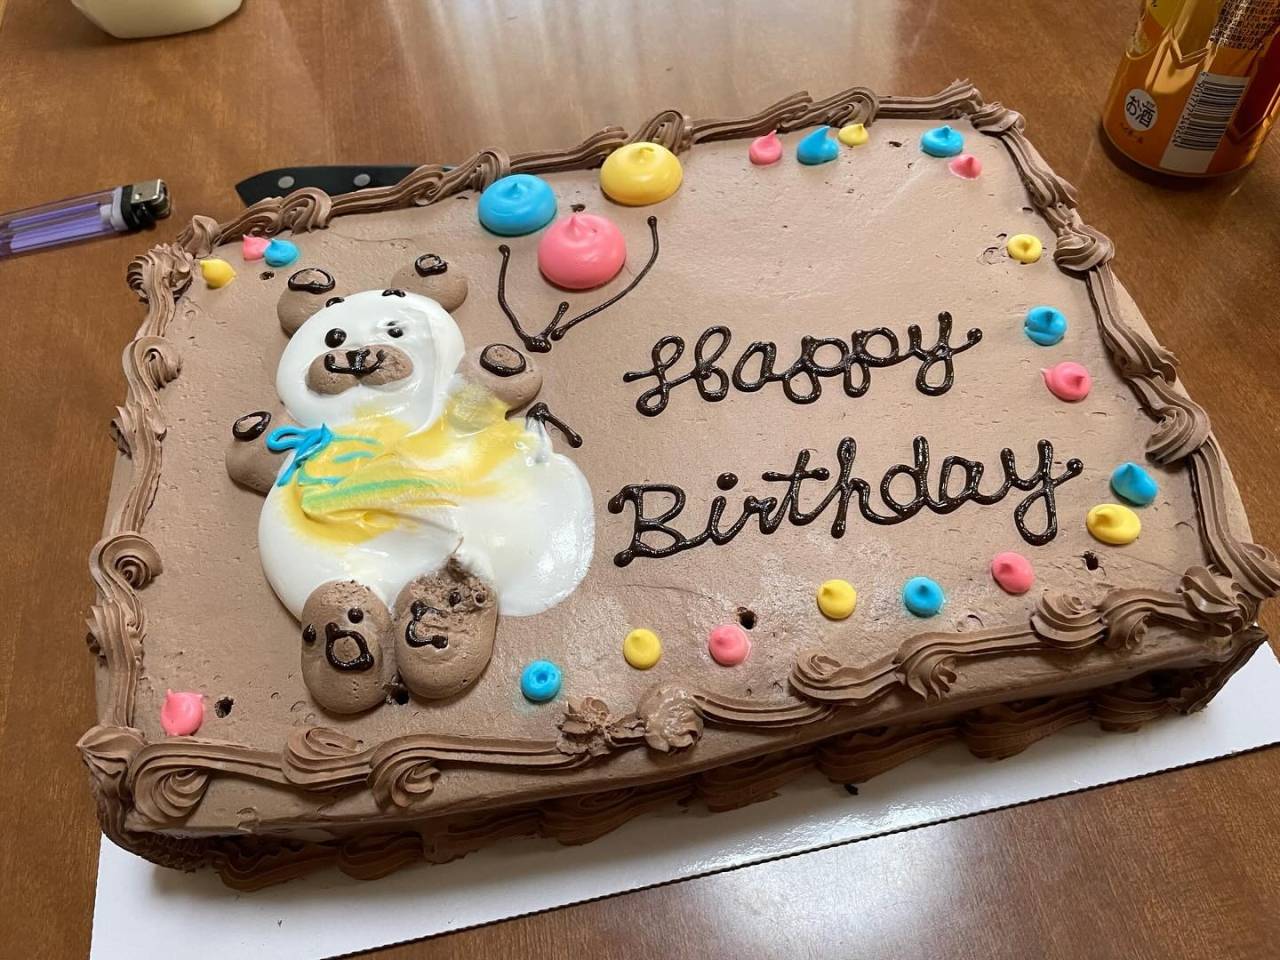 大きなケーキで誕生日祝いをしてもらいました🎂